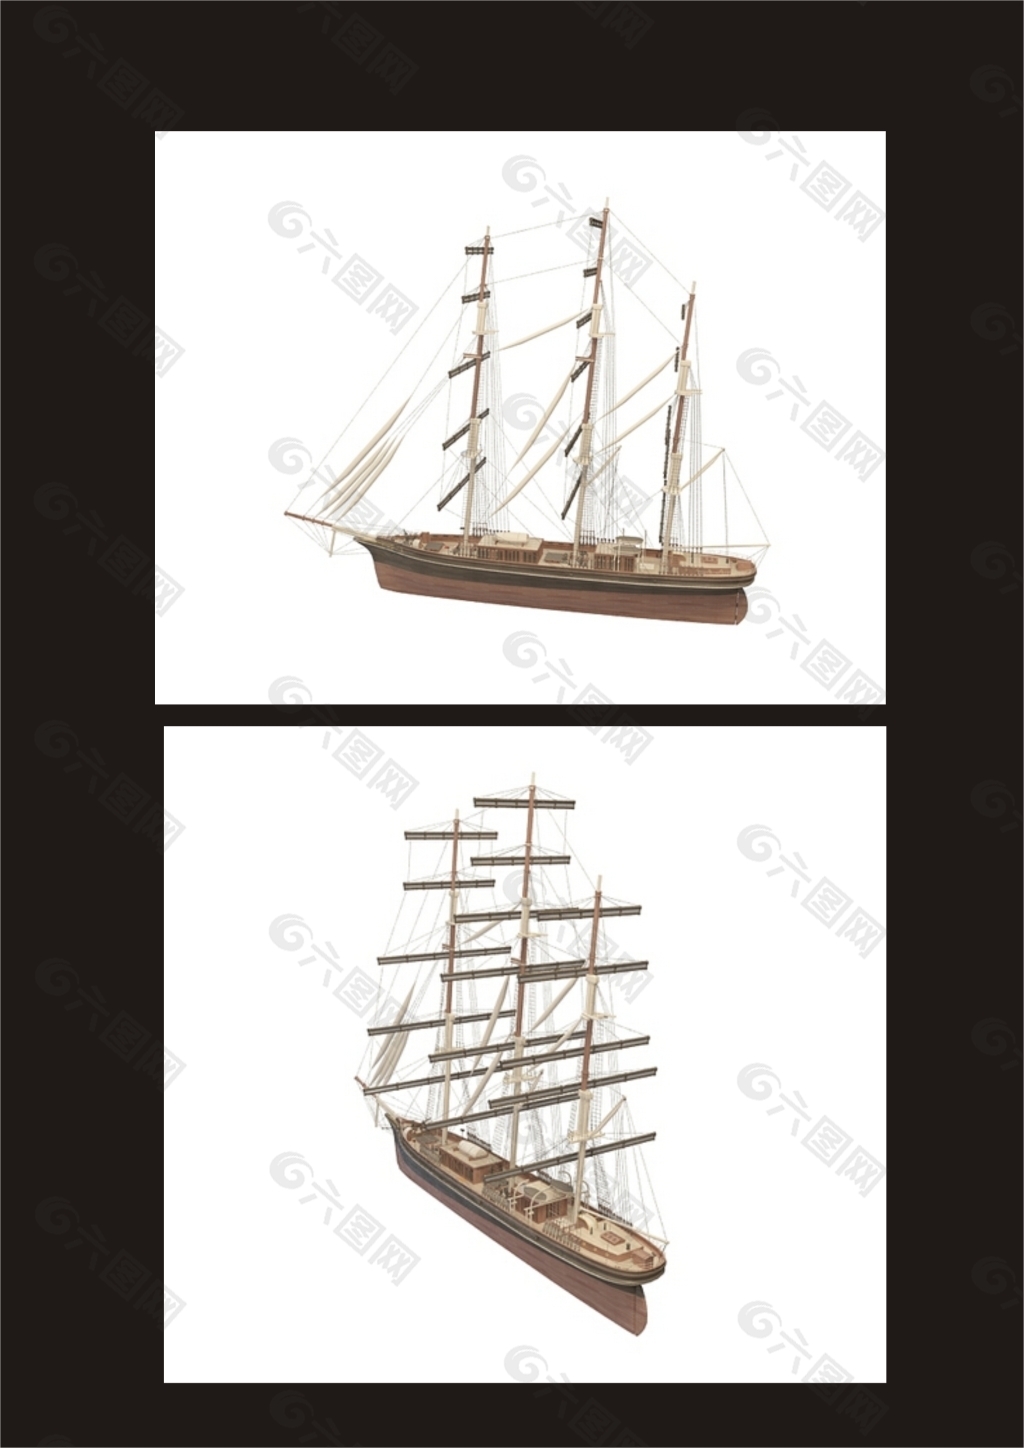 帆船3d模型